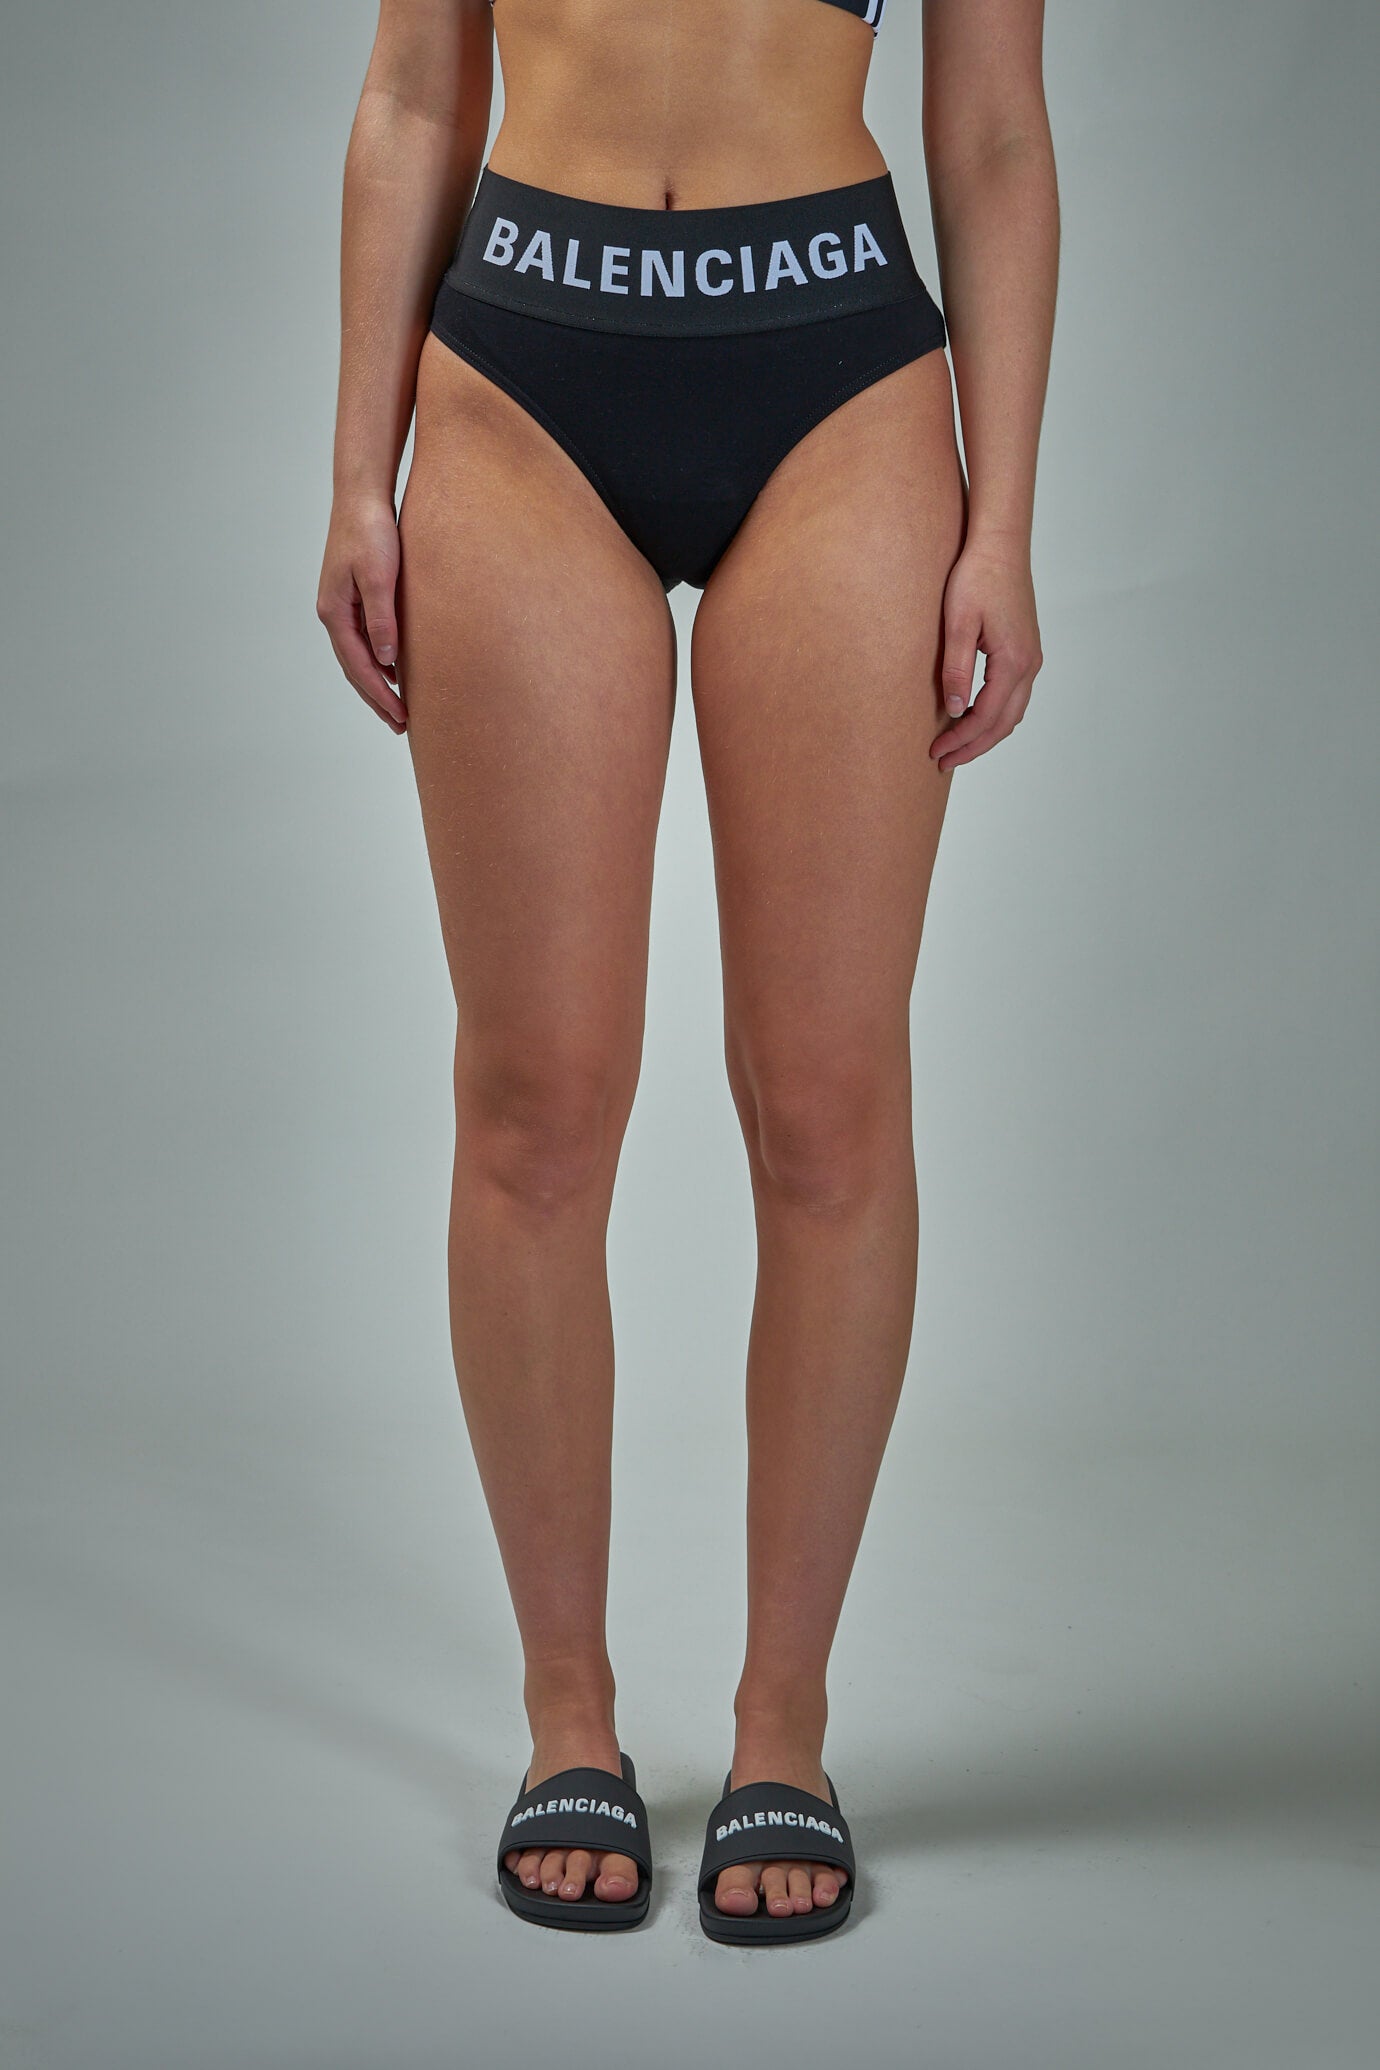 Balenciaga Underwear Wide Elastic Briefs – LABELS